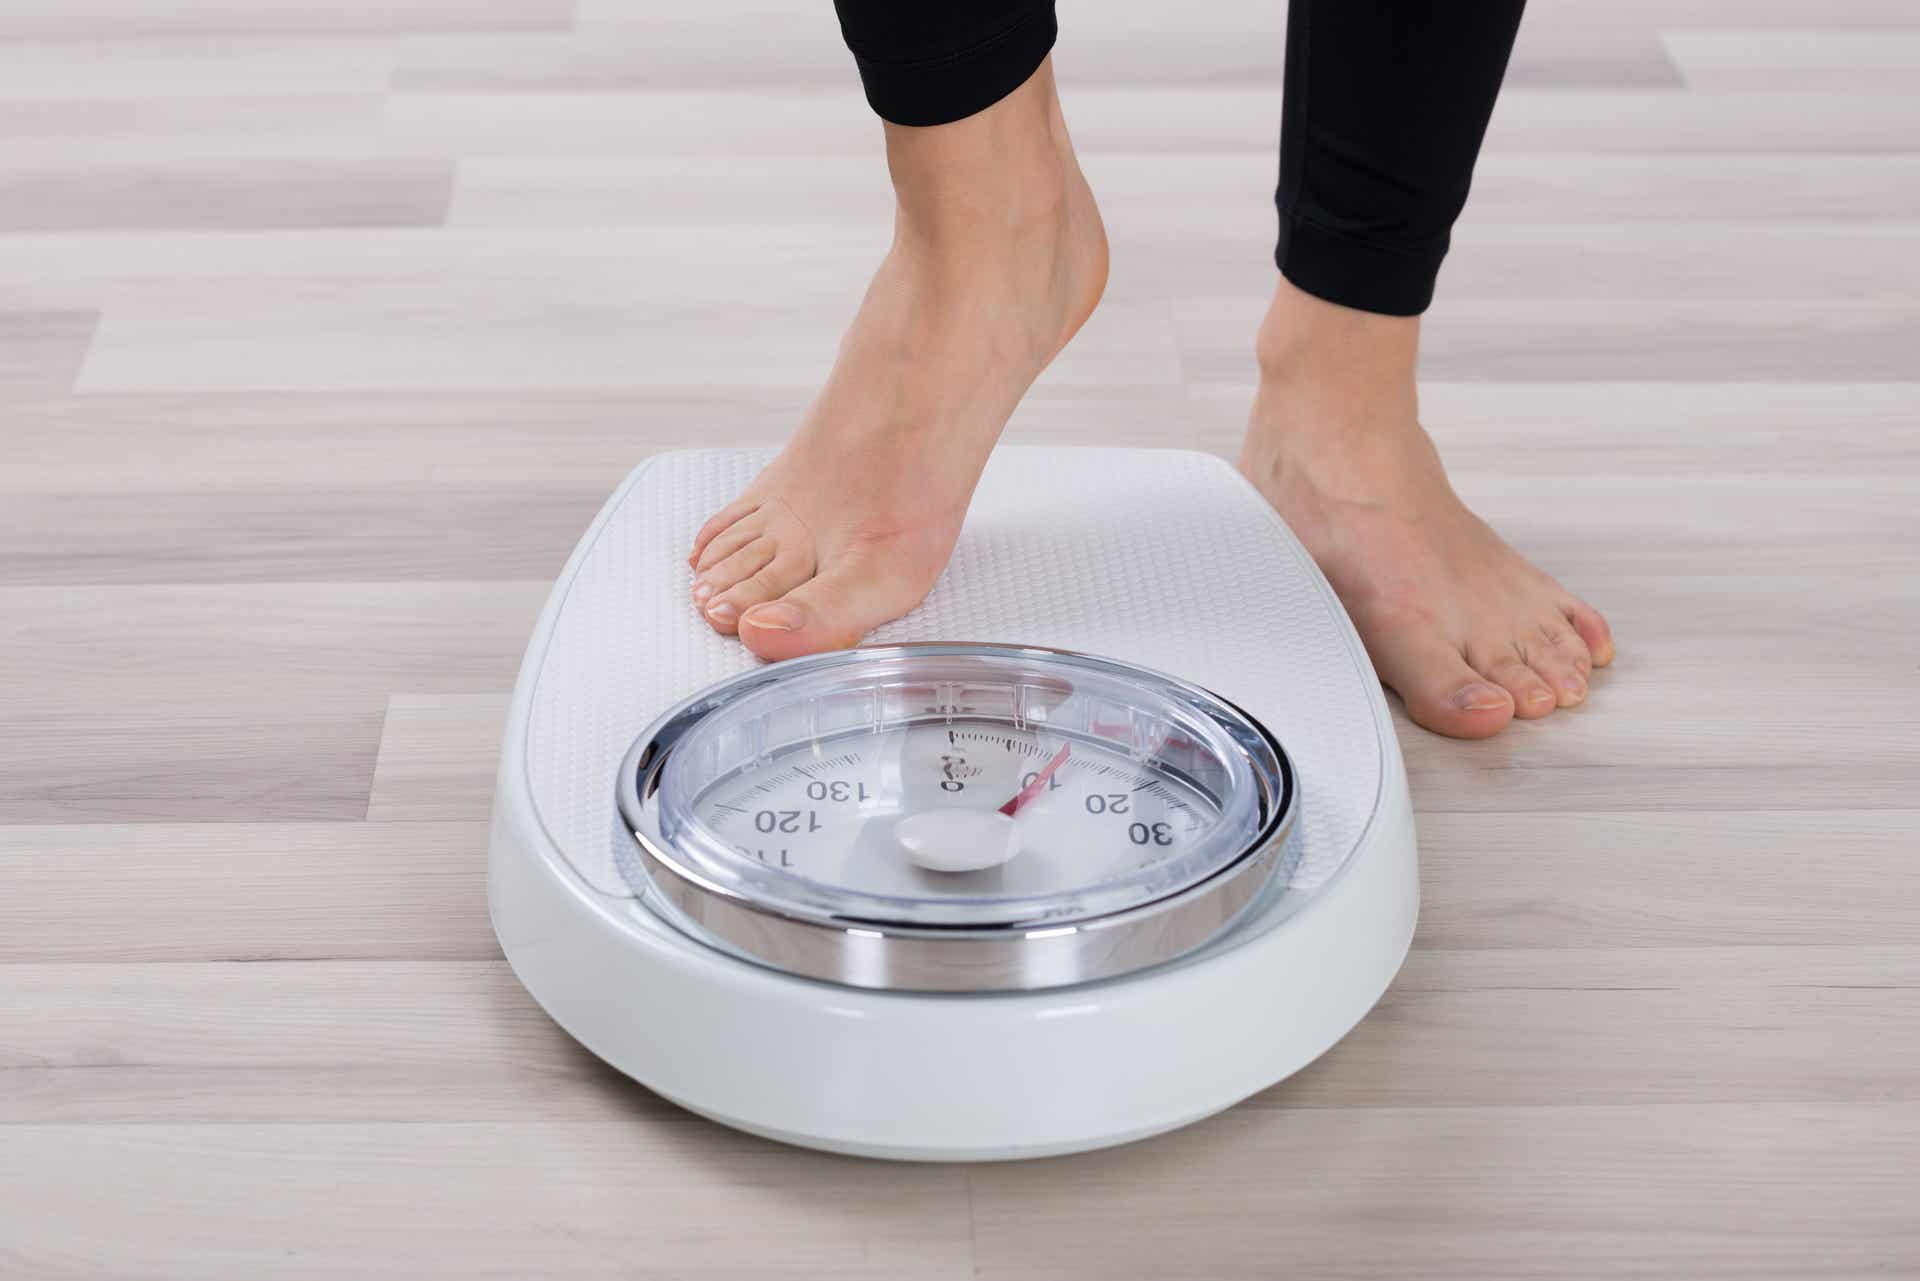 Βιταμίνη D και απώλεια βάρους: Πώς σχετίζονται;